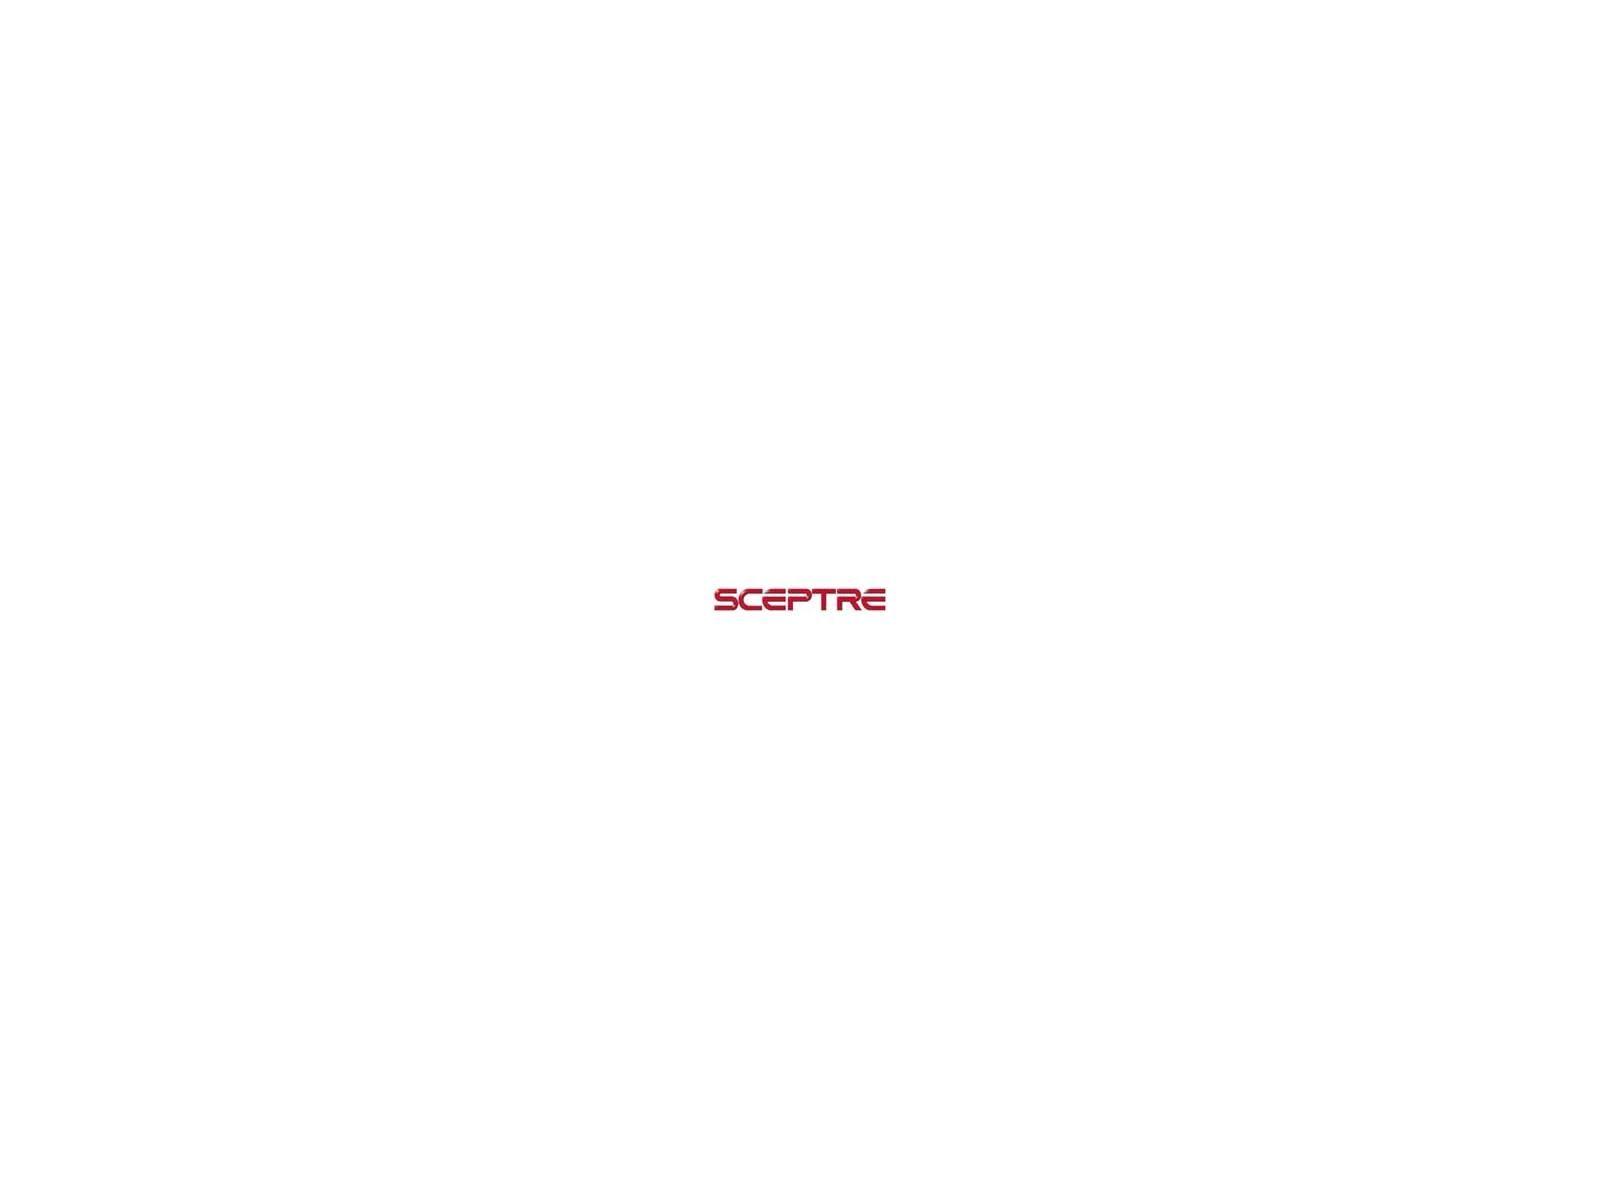 Sceptre Logo - Sceptre X37SV Naga Widescreen HDTV